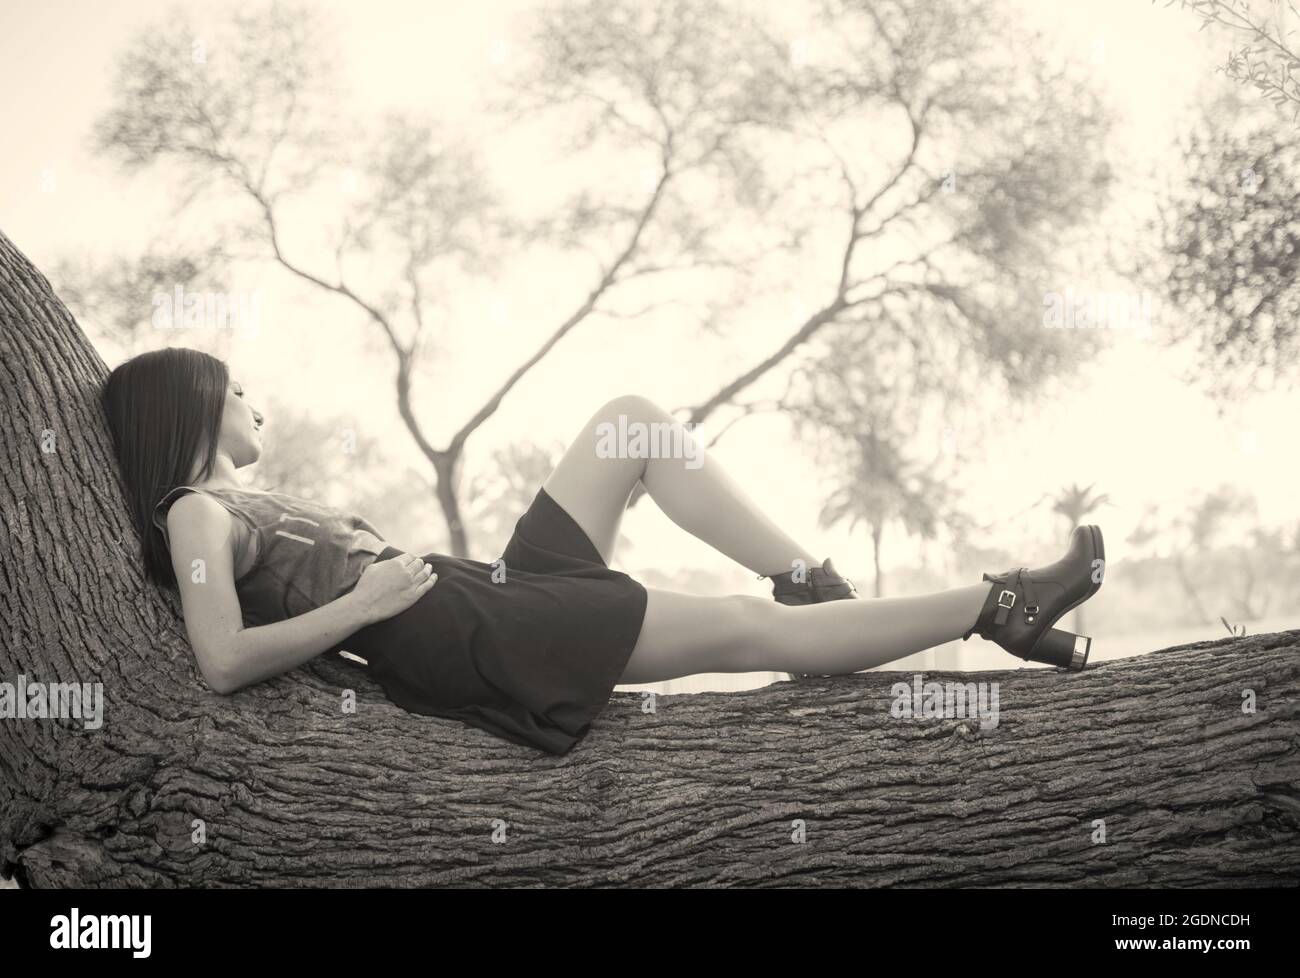 Junge Frau aus dem Nahen Osten entspannt sich auf einem Baumstamm in einem Park Stockfoto